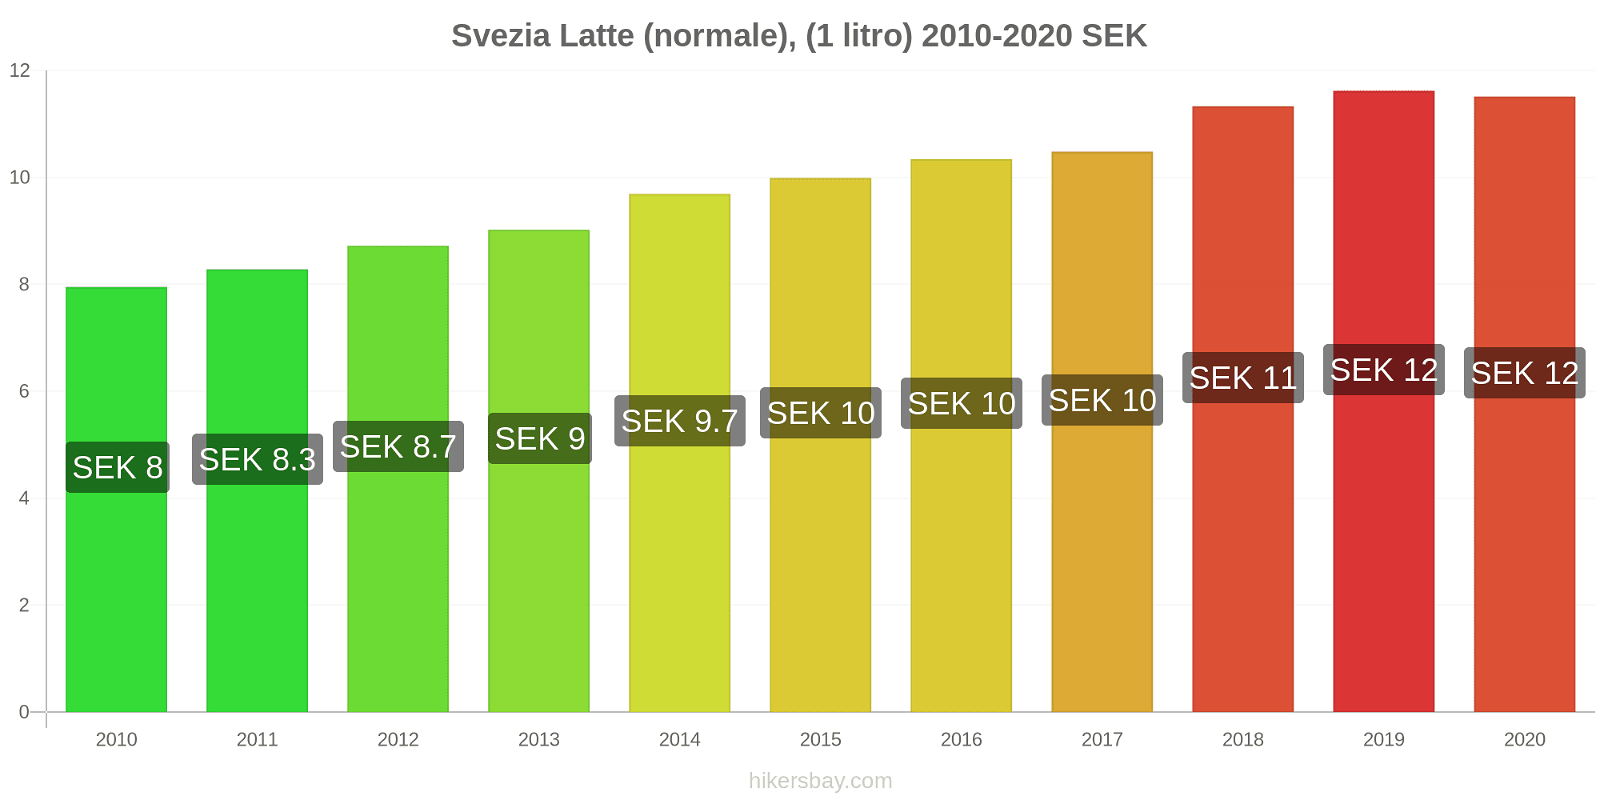 Svezia variazioni di prezzo Latte (1 litro) hikersbay.com